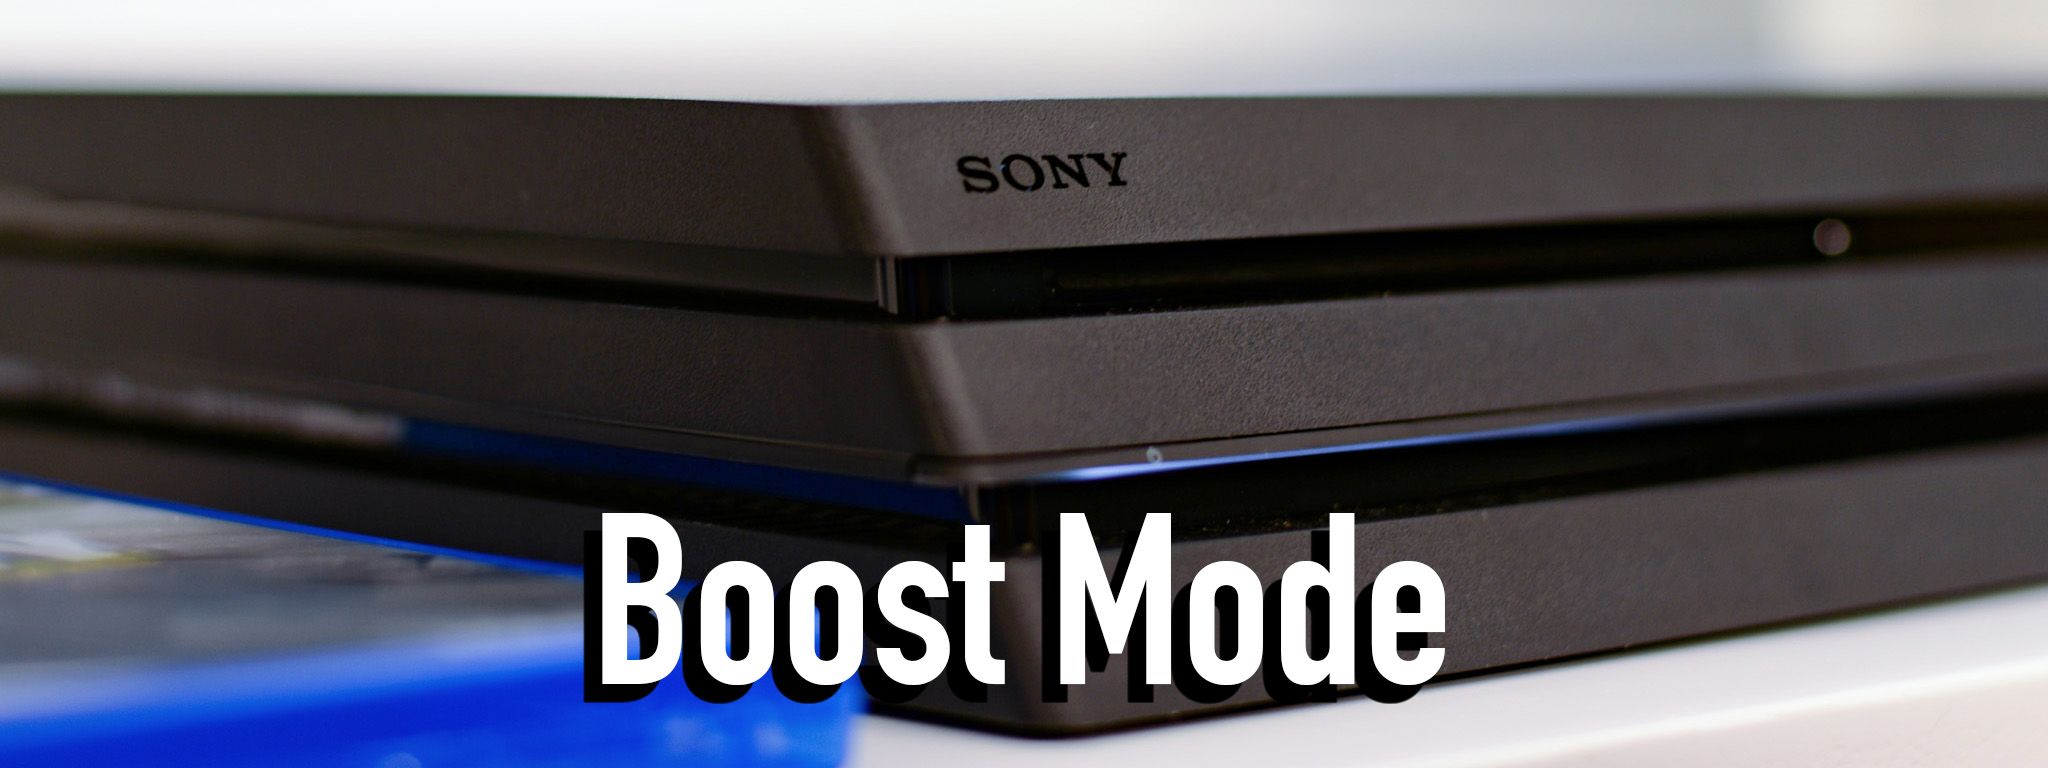 PS4 Pro có thêm tính năng "Boost Mode" để các game cũ chạy nhanh hơn, tăng FPS, giảm Loading